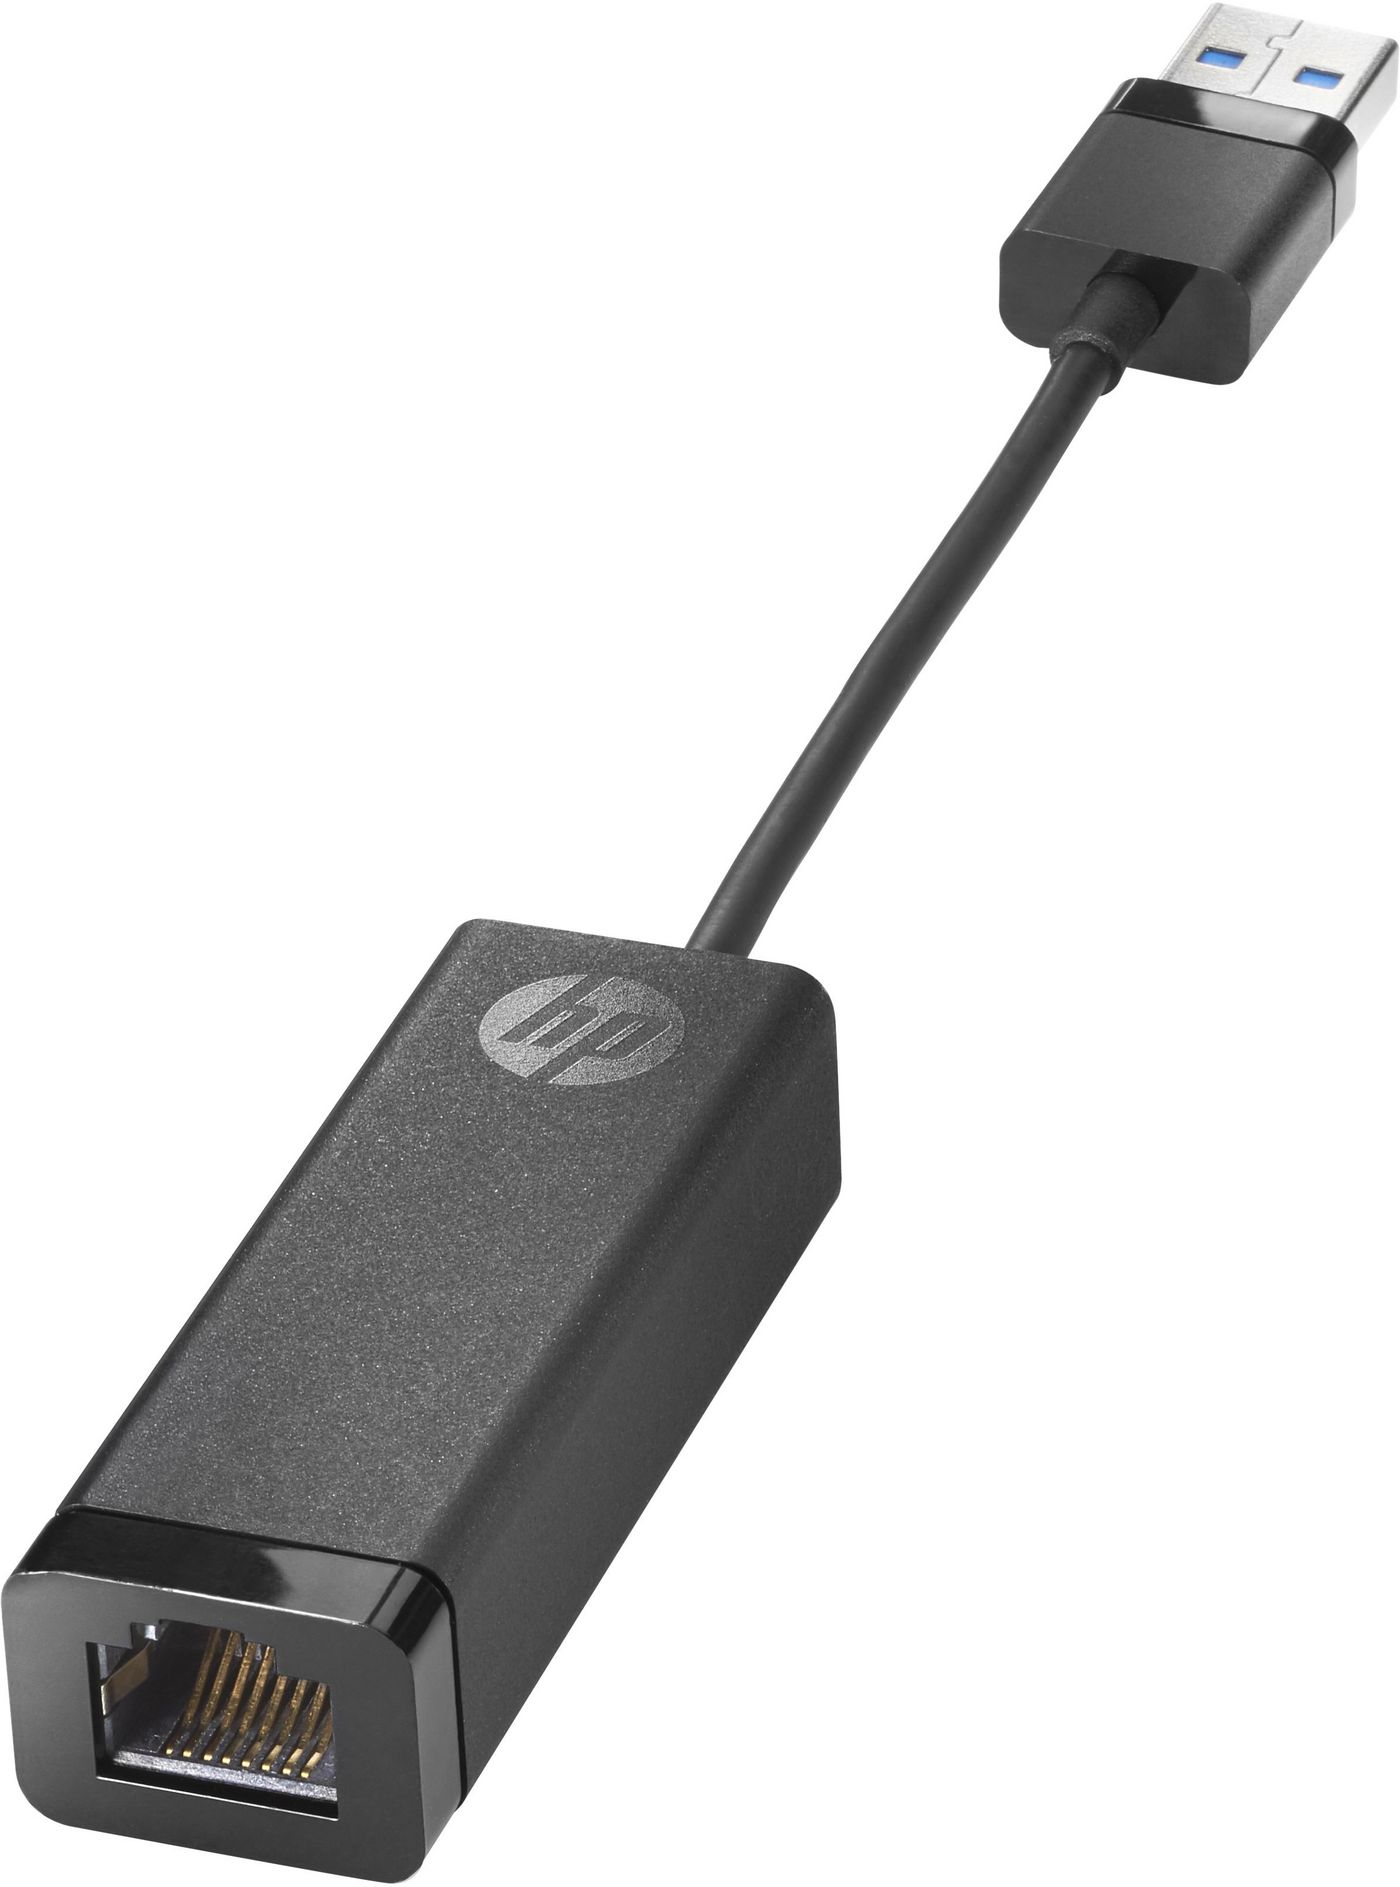 USB 3.0 to Gigabit LAN Adapter